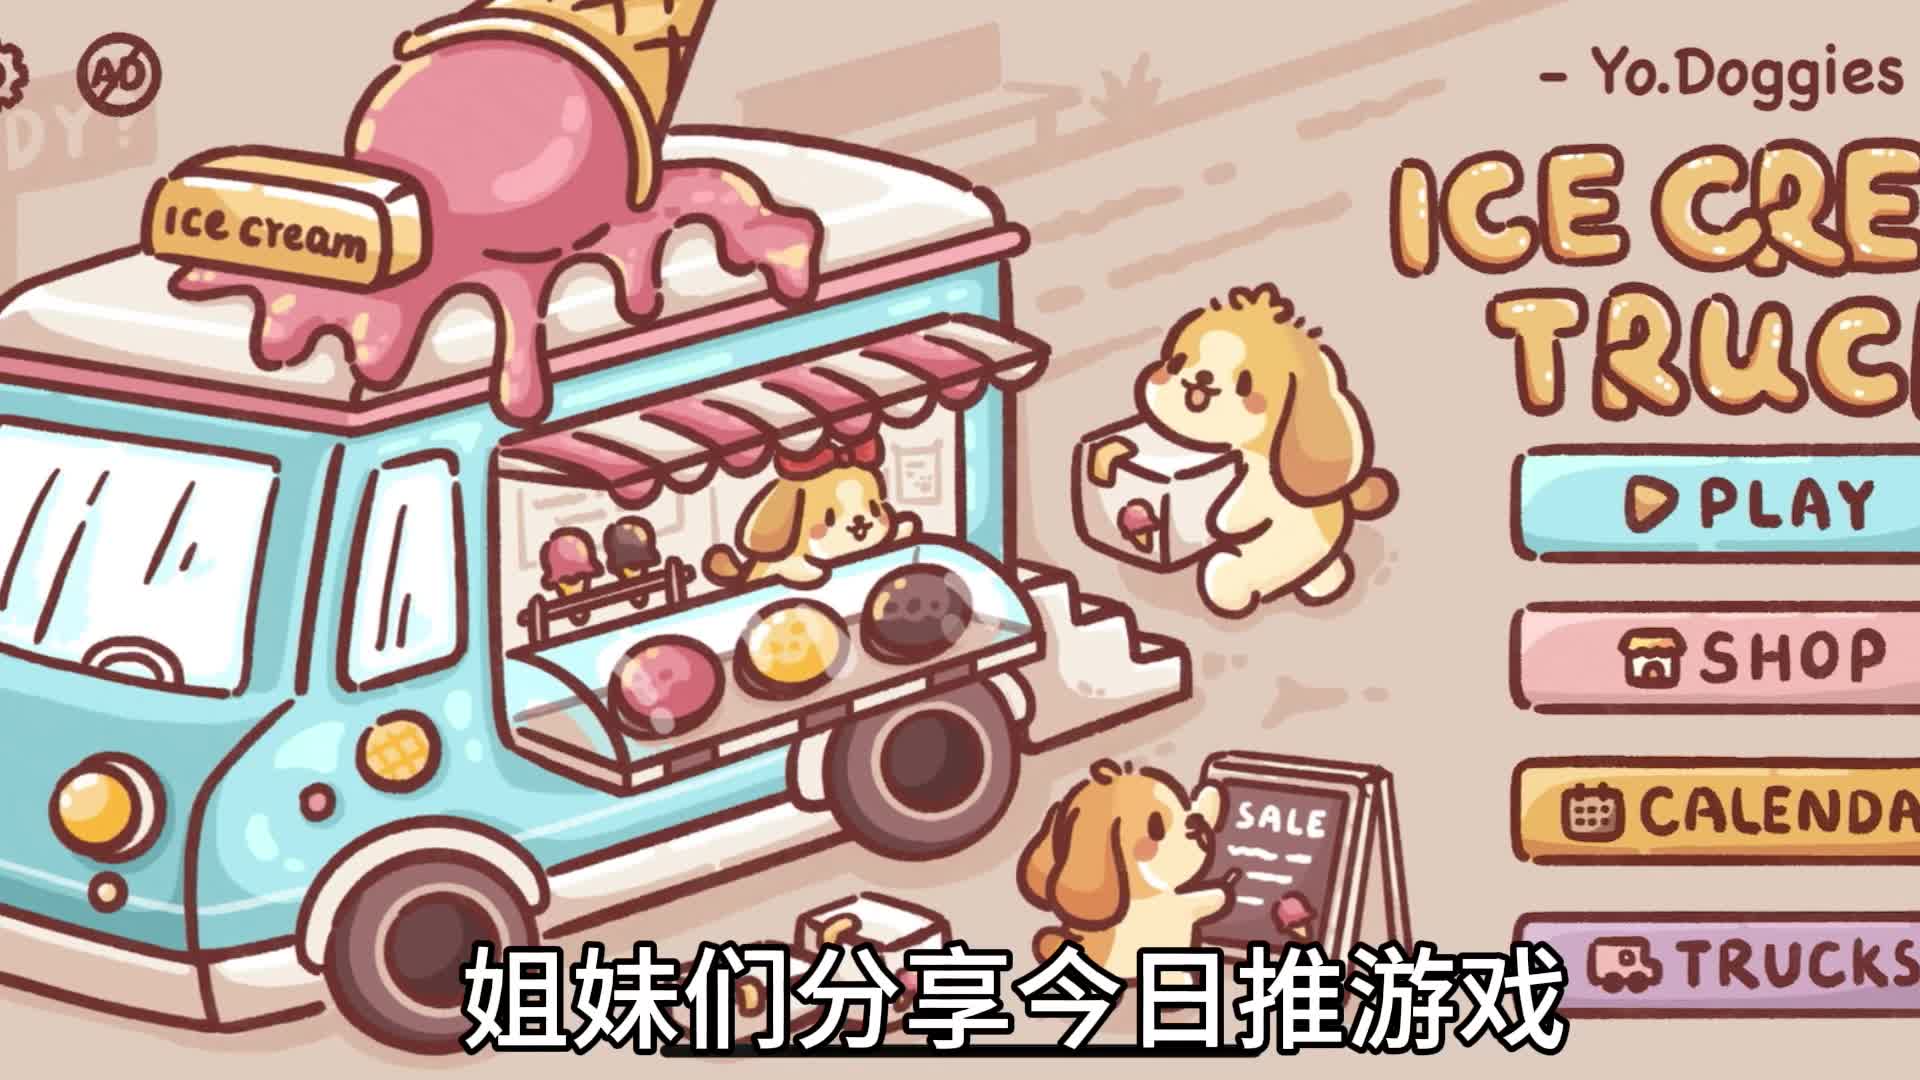 救命！巨巨巨可爱治愈的冰淇淋餐车经营游戏，快来和修狗一起卖冰淇淋吧